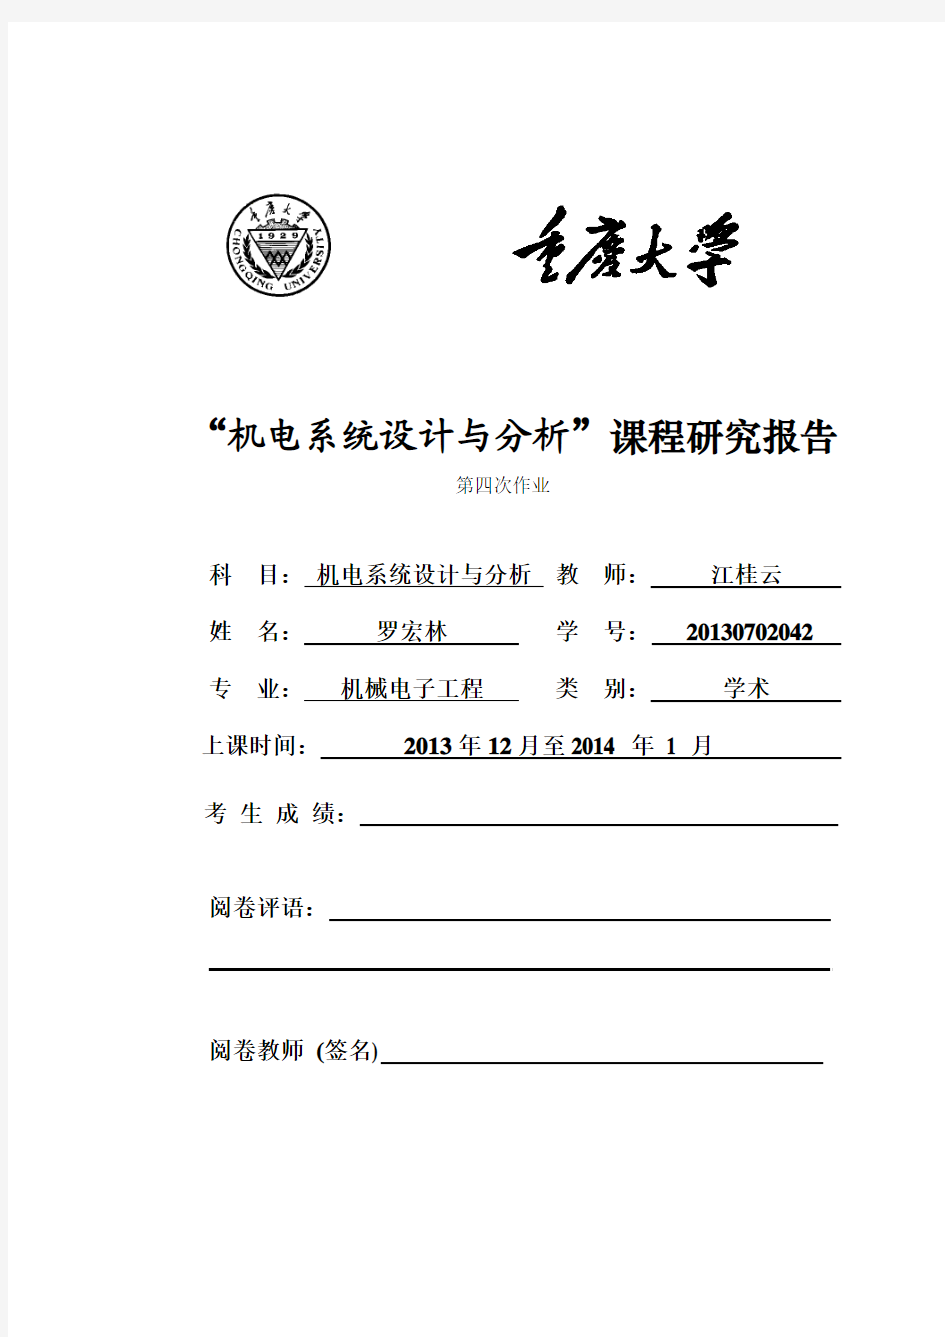 重庆大学 研究生课程研究报告参考格式